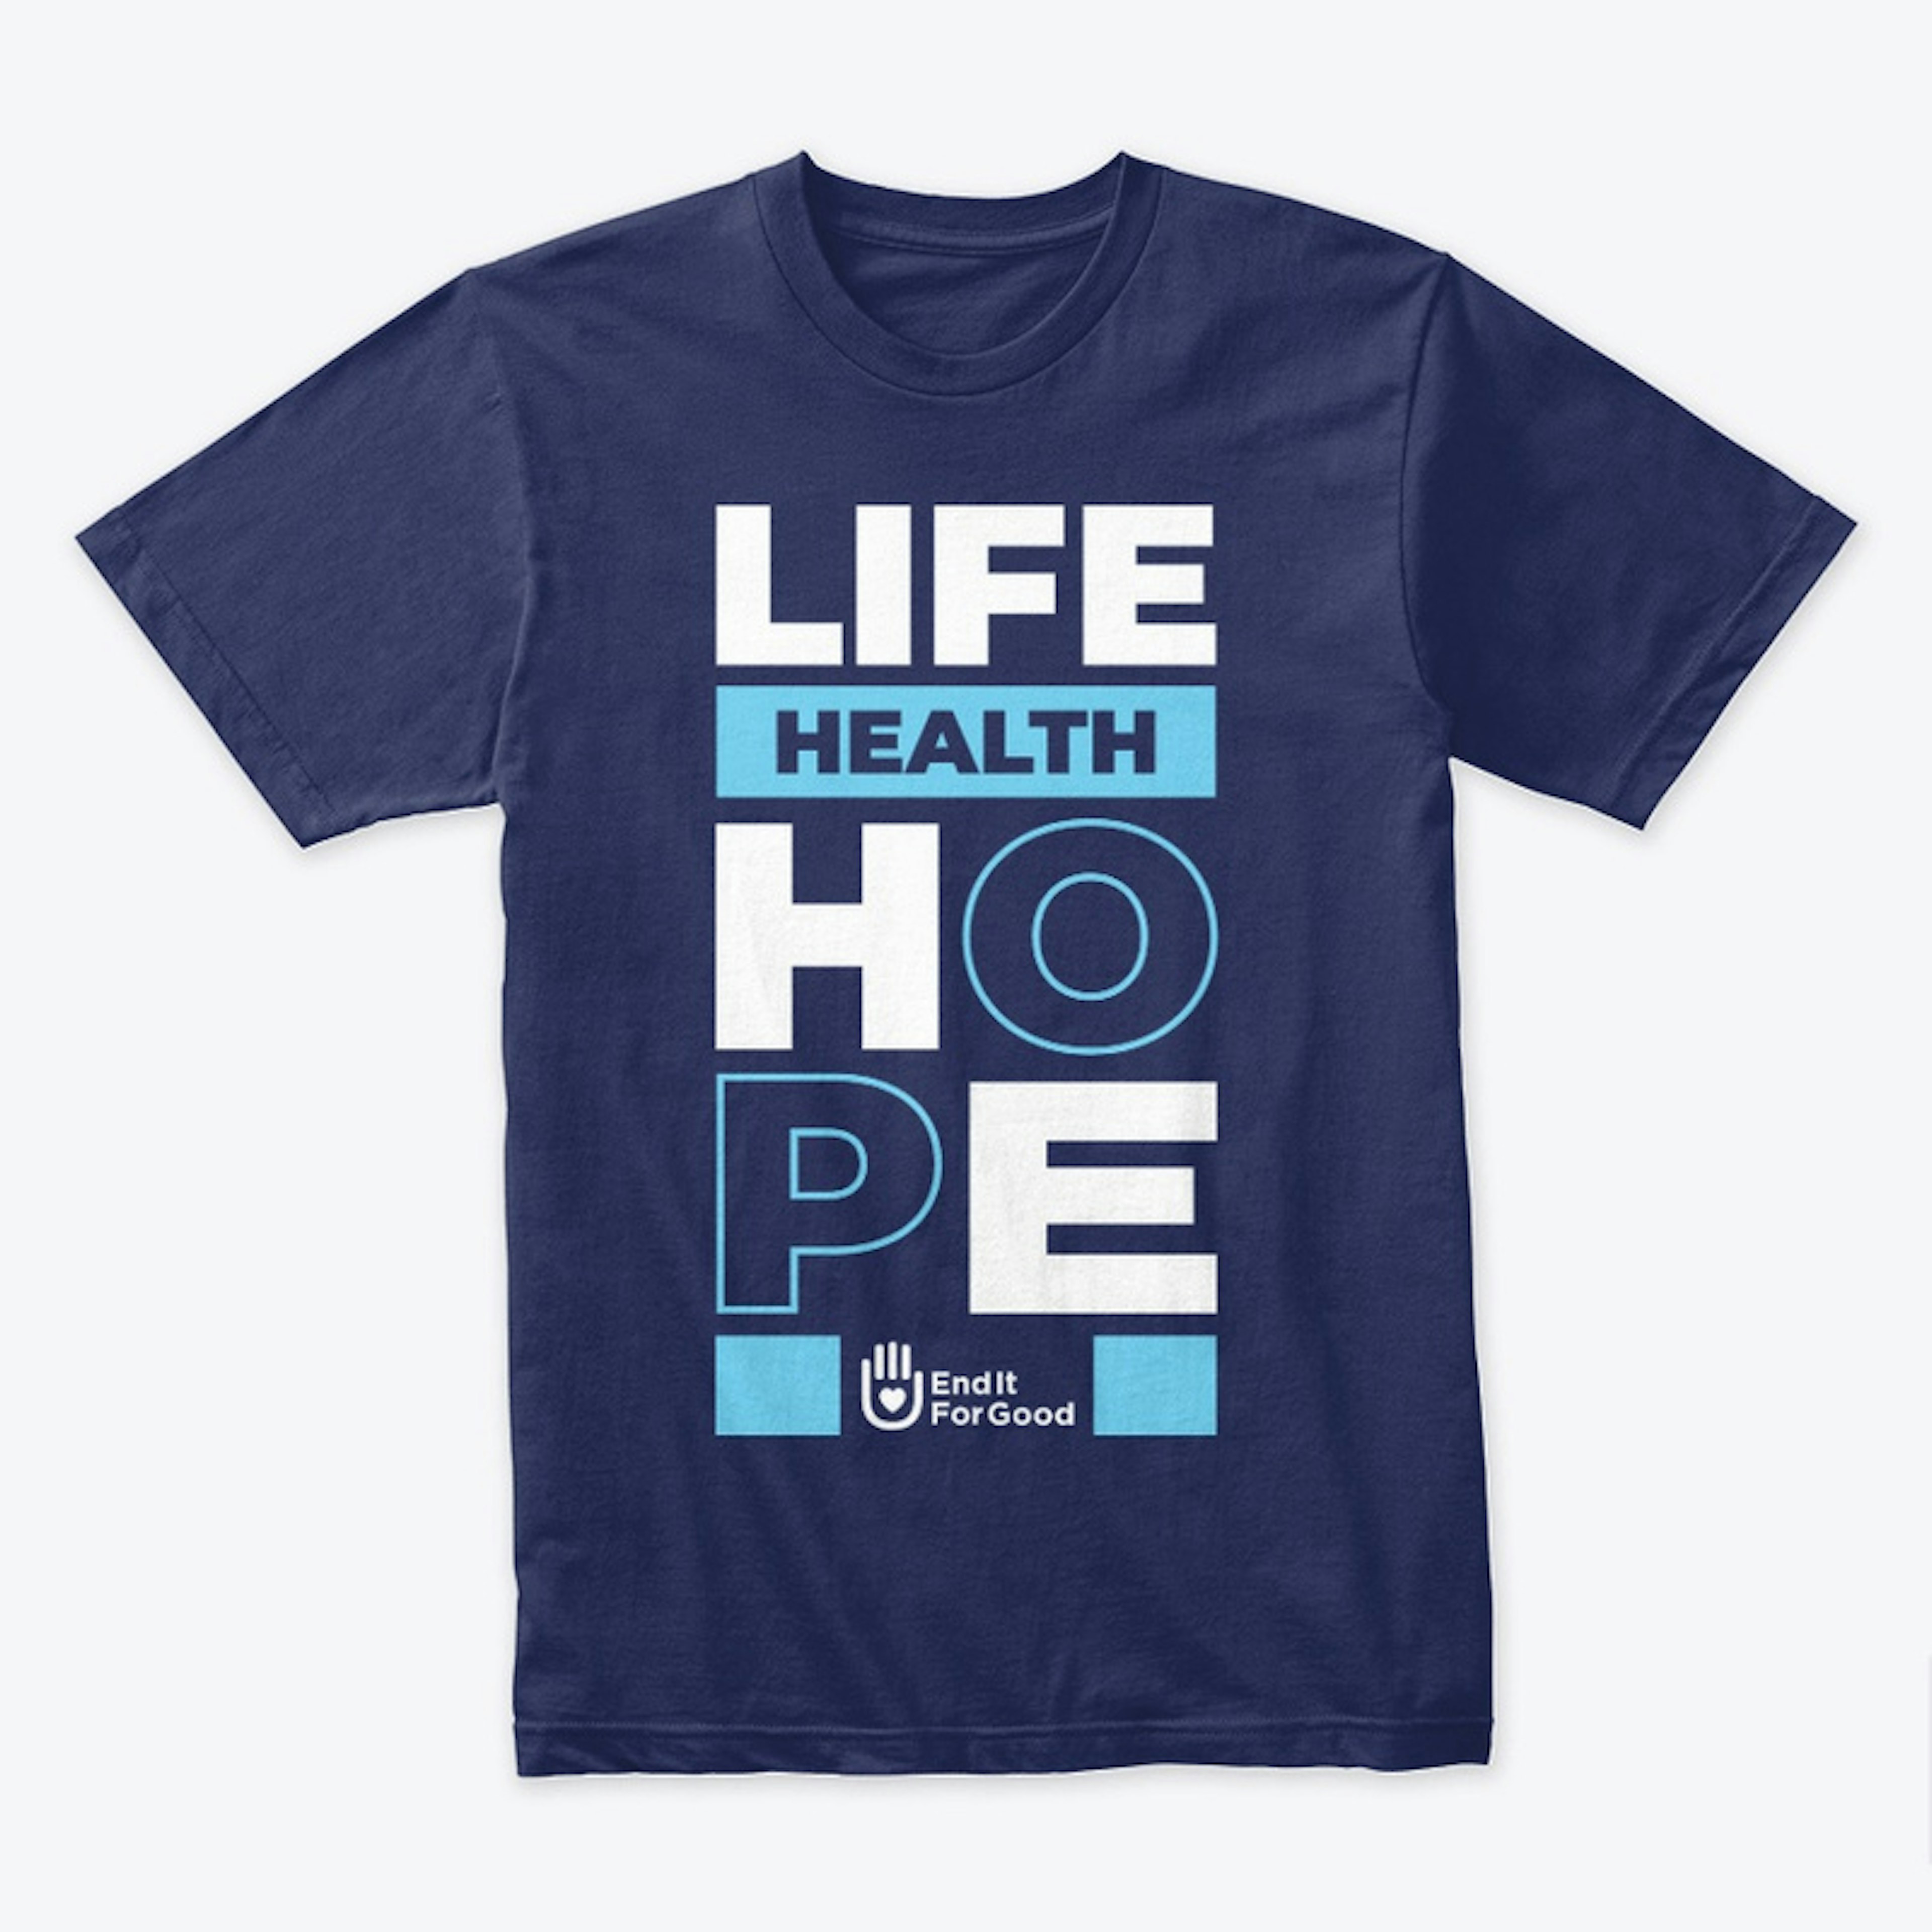 "Life Help Hope" Unisex Tee- Vertical